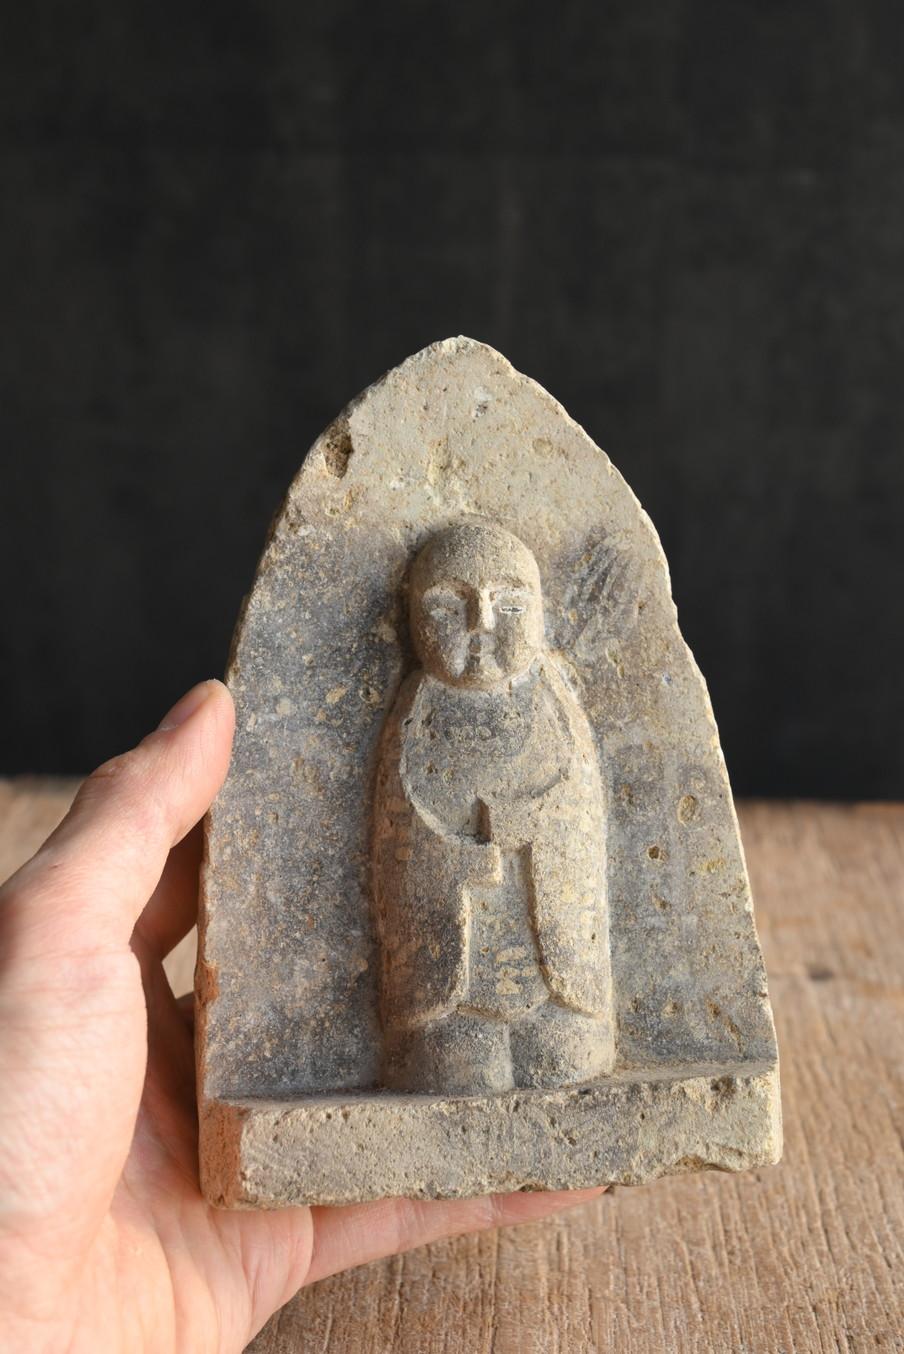 Il s'agit d'un petit bouddha en pierre fabriqué pendant la période Edo au Japon.

Sa dignité est 